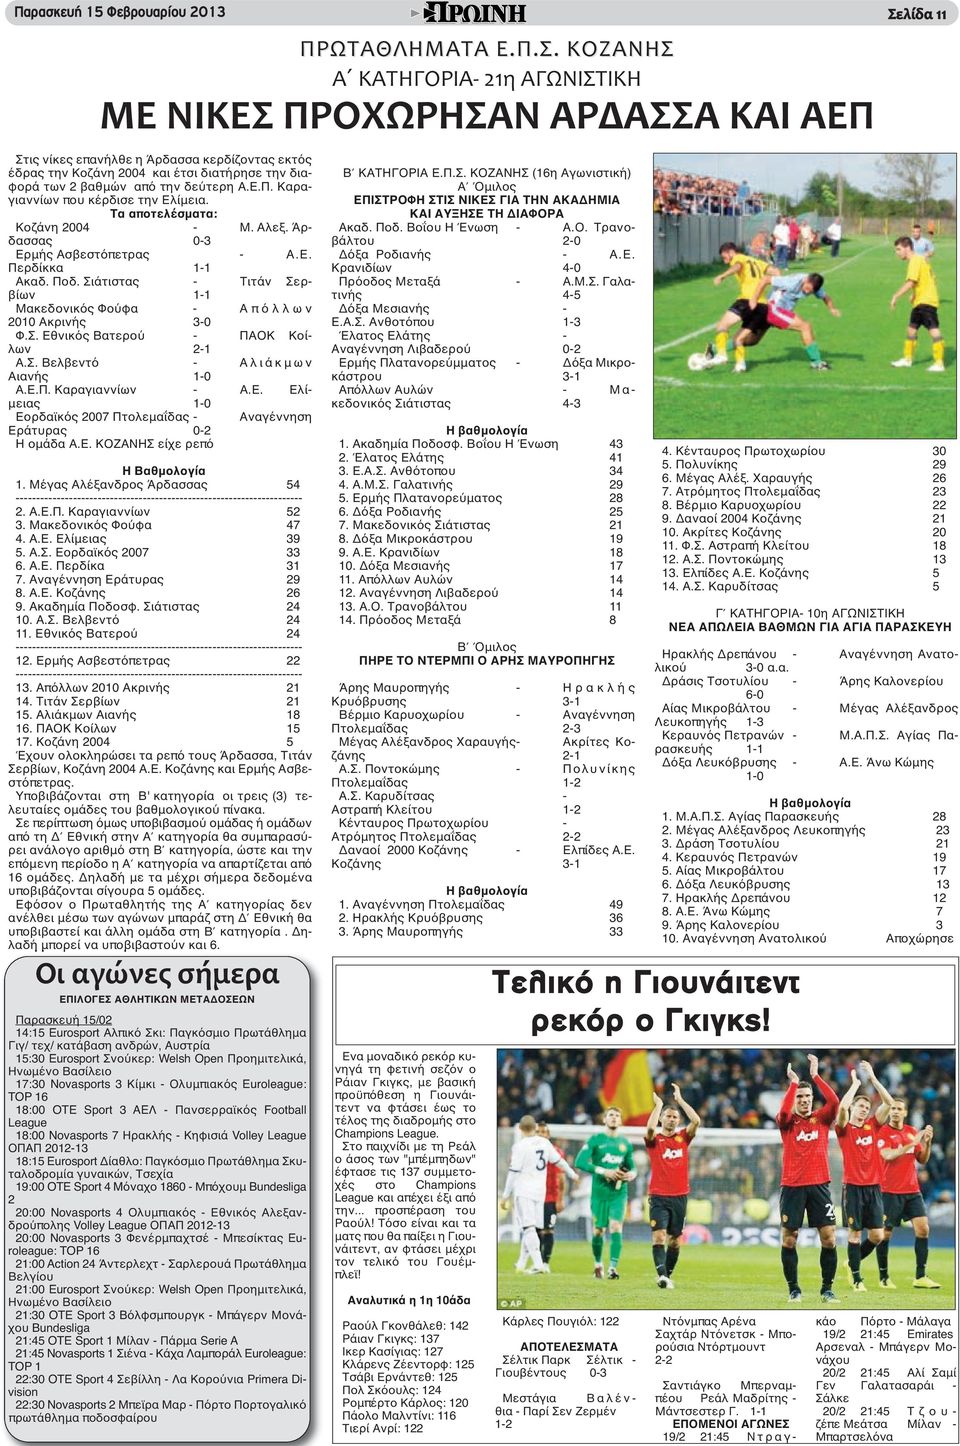 την δεύτερη Α.Ε.Π. Καραγιαννίων που κέρδισε την Ελίμεια. Τα αποτελέσματα: Κοζάνη 2004 - Μ. Αλεξ. Άρδασσας 0-3 Ερμής Ασβεστόπετρας - Α.Ε. Περδίκκα 1-1 Ακαδ. Ποδ.